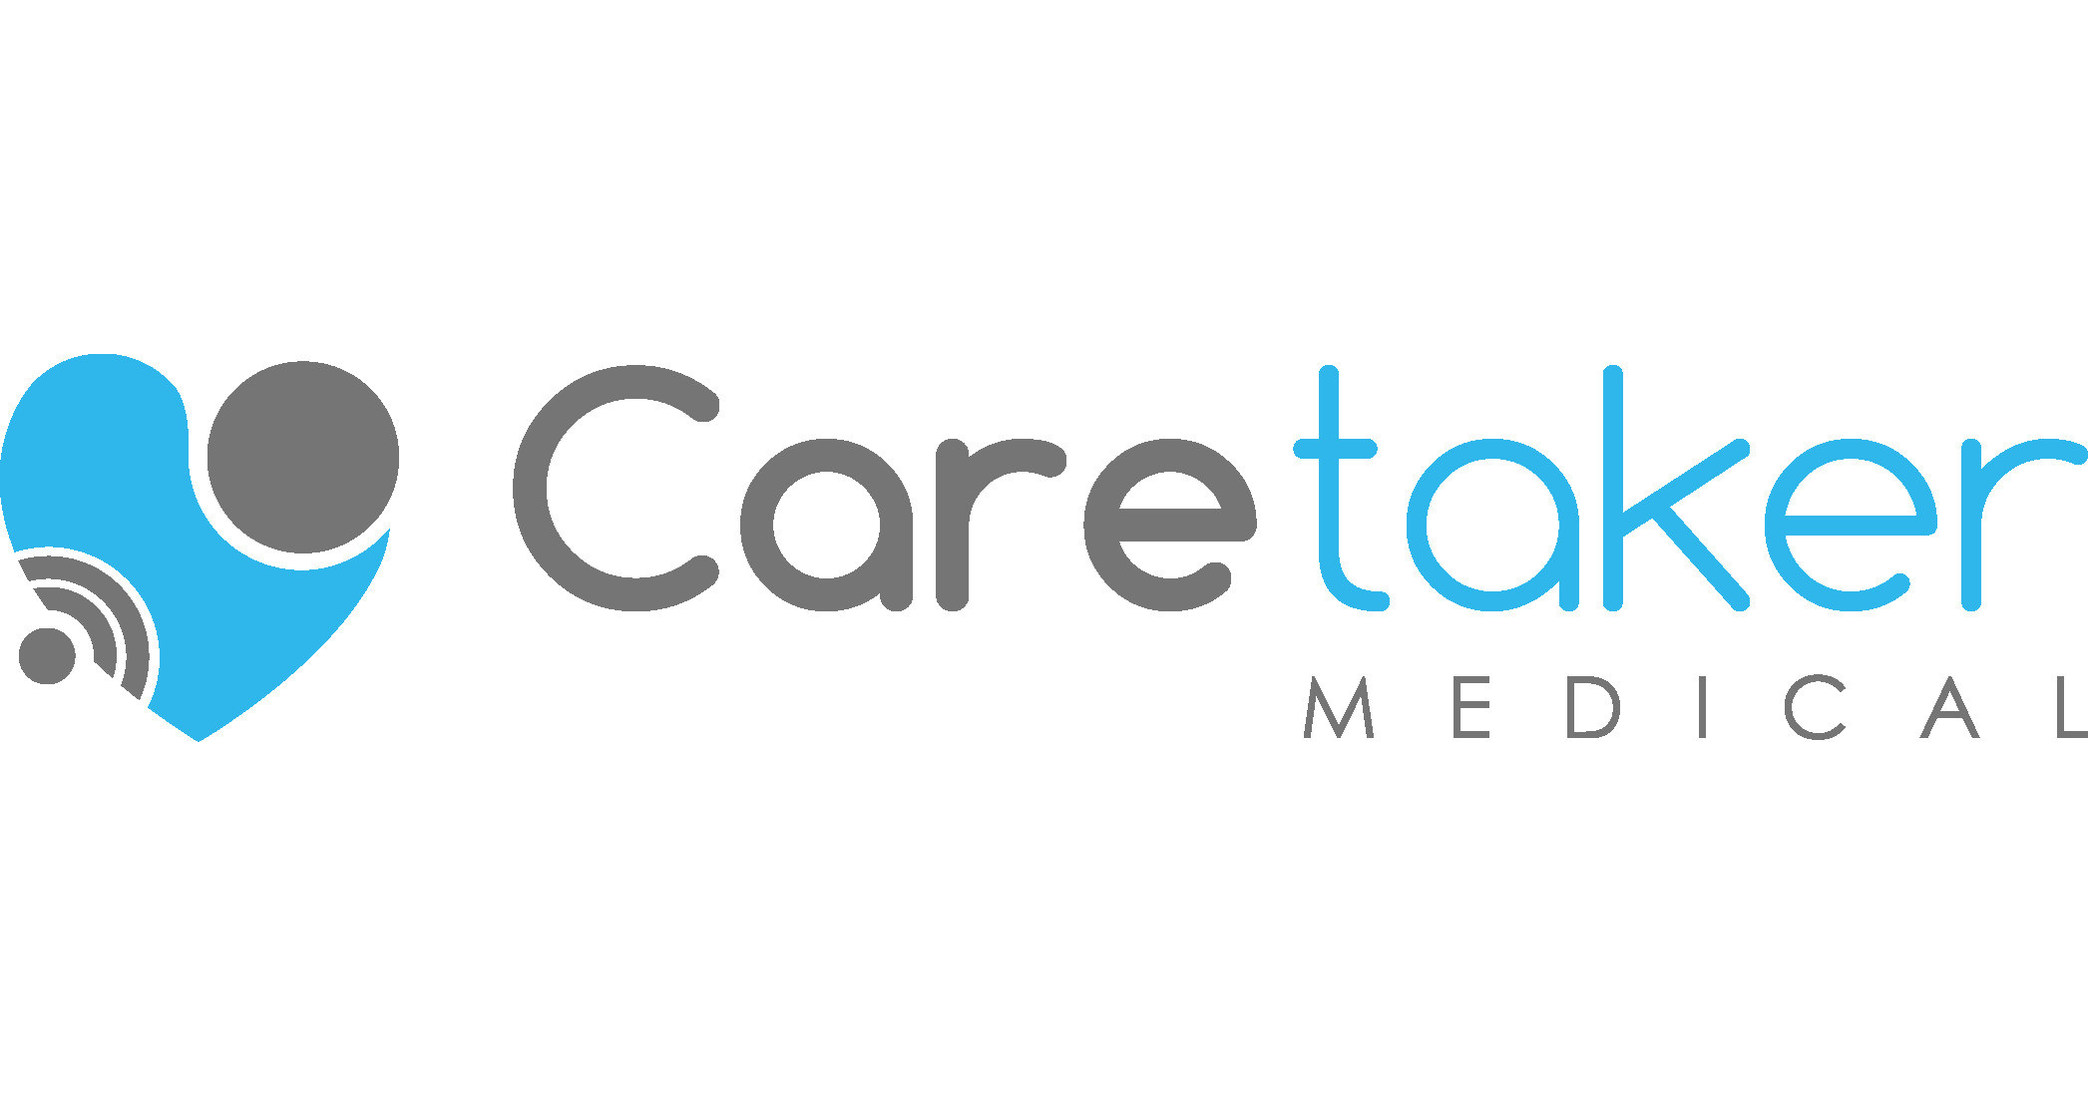 Caretaker Medical